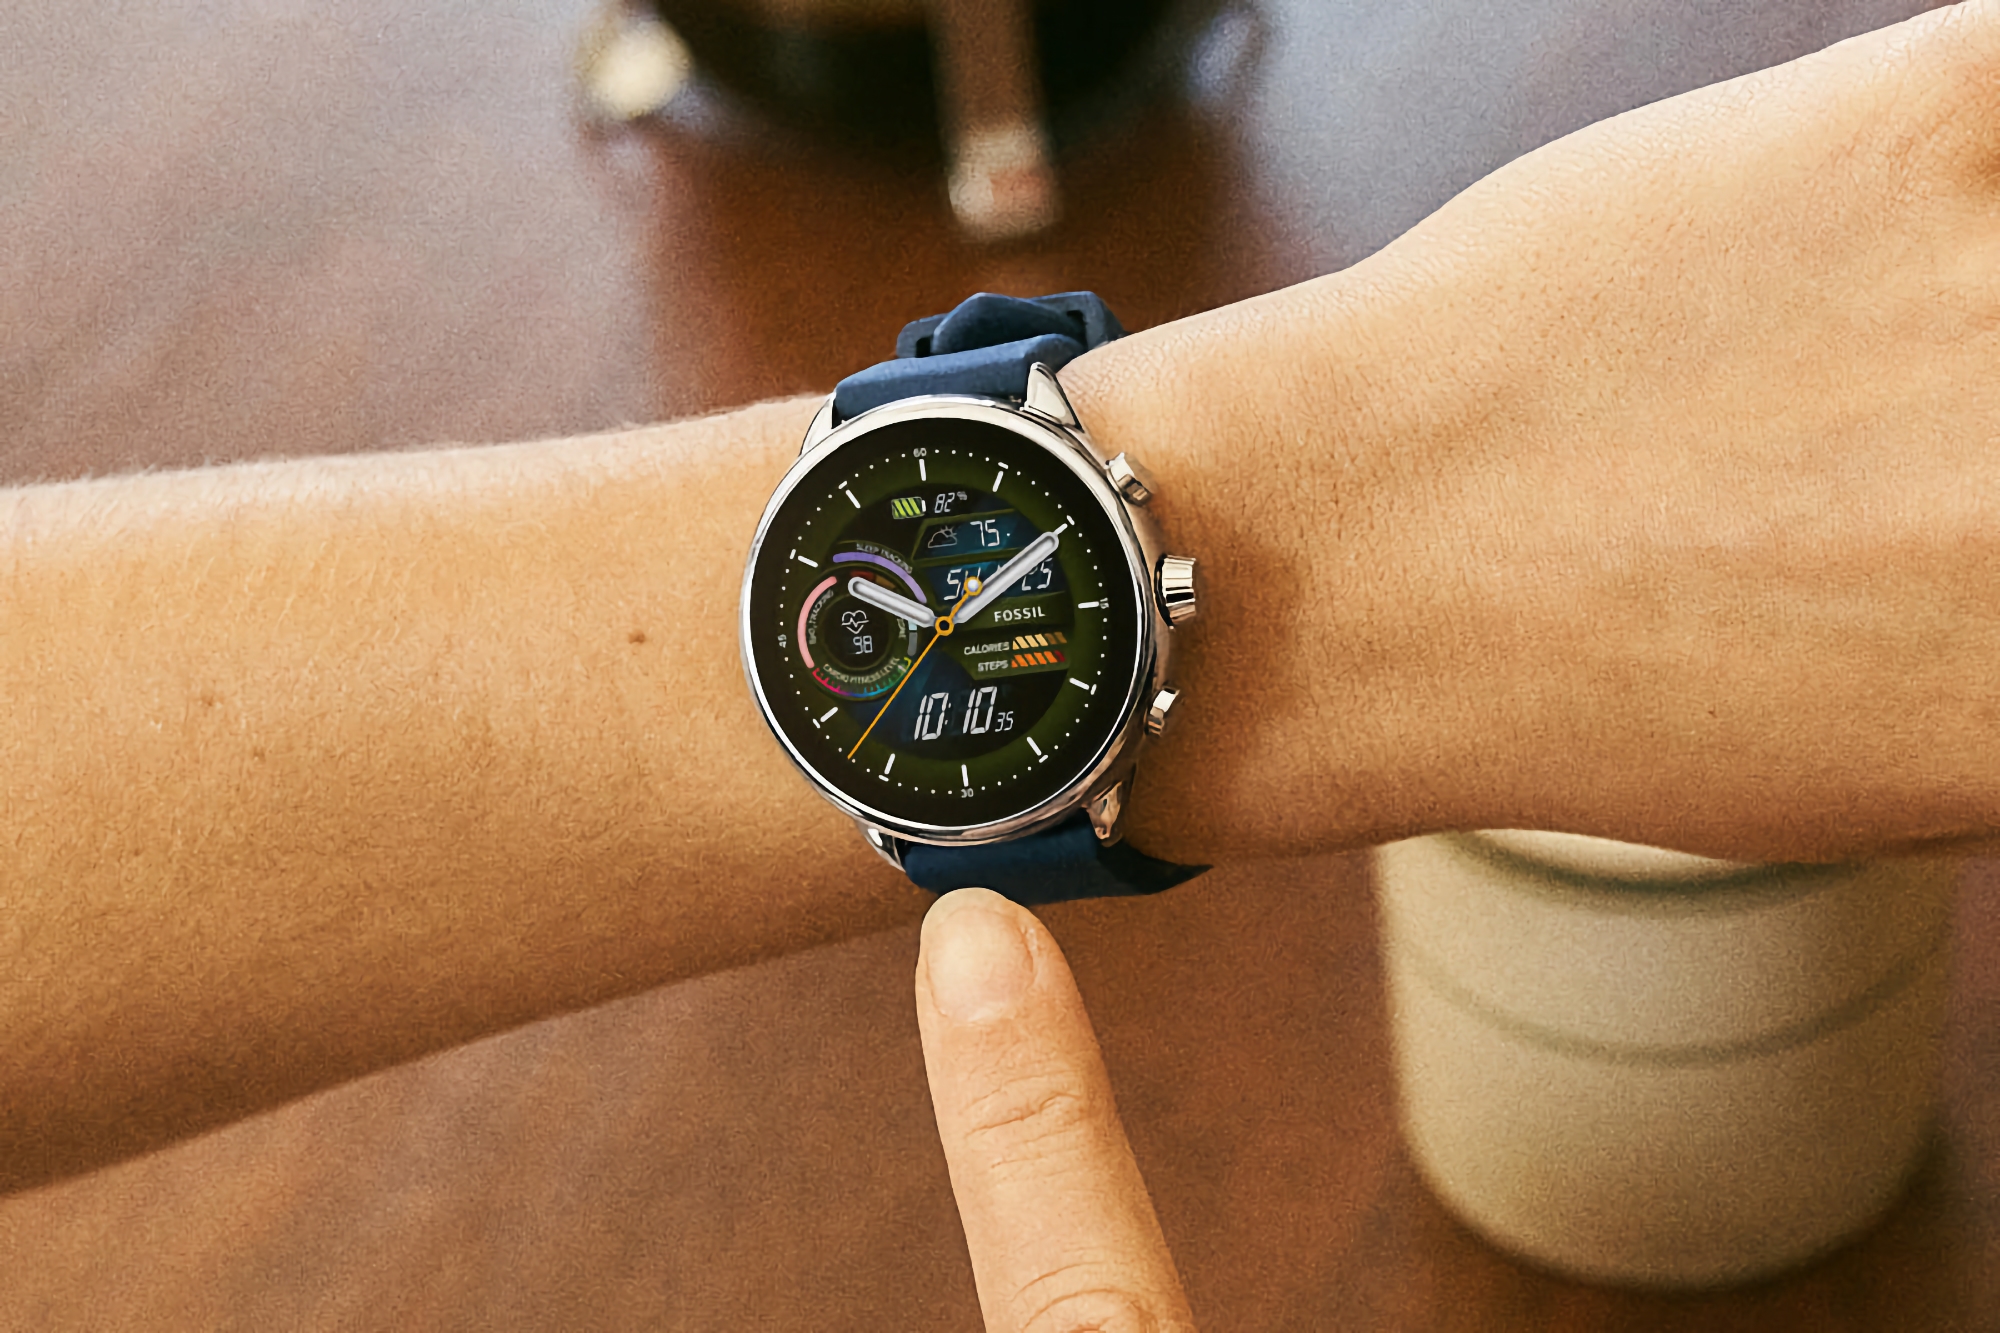 Fossil Gen 6 Wellness Edition na Amazon: smartwatch z wyświetlaczem AMOLED, NFC, Alexą i Wear OS 3 na pokładzie za 90 dolarów taniej